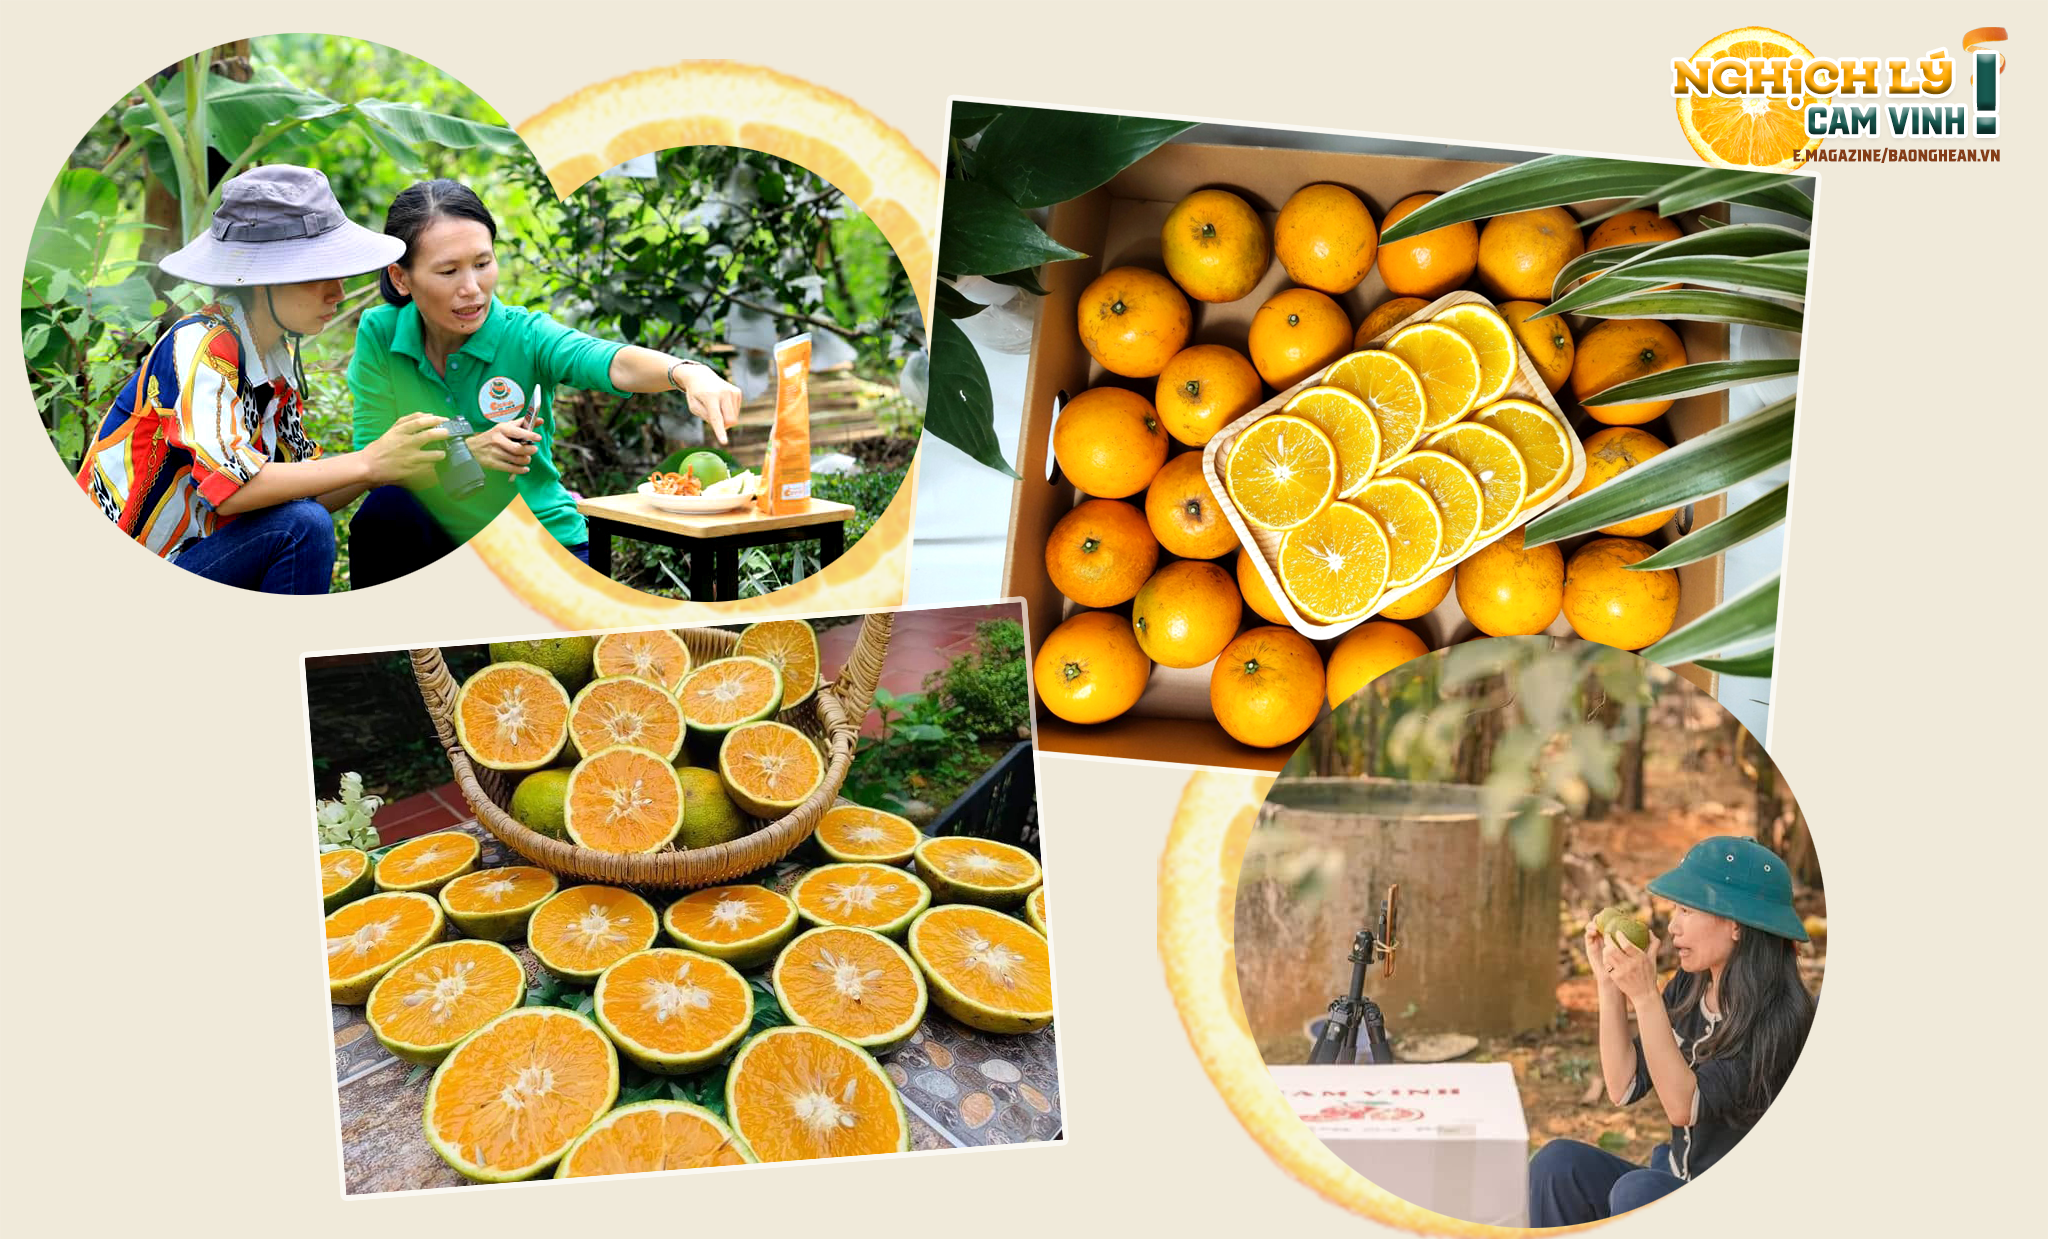 Chị Nguyễn Thị Lê Na livertream bán cam trên nền thương mại điện tử; Khâu hình ảnh được đầu tư để tạo sức hấp dẫn đối với khách.